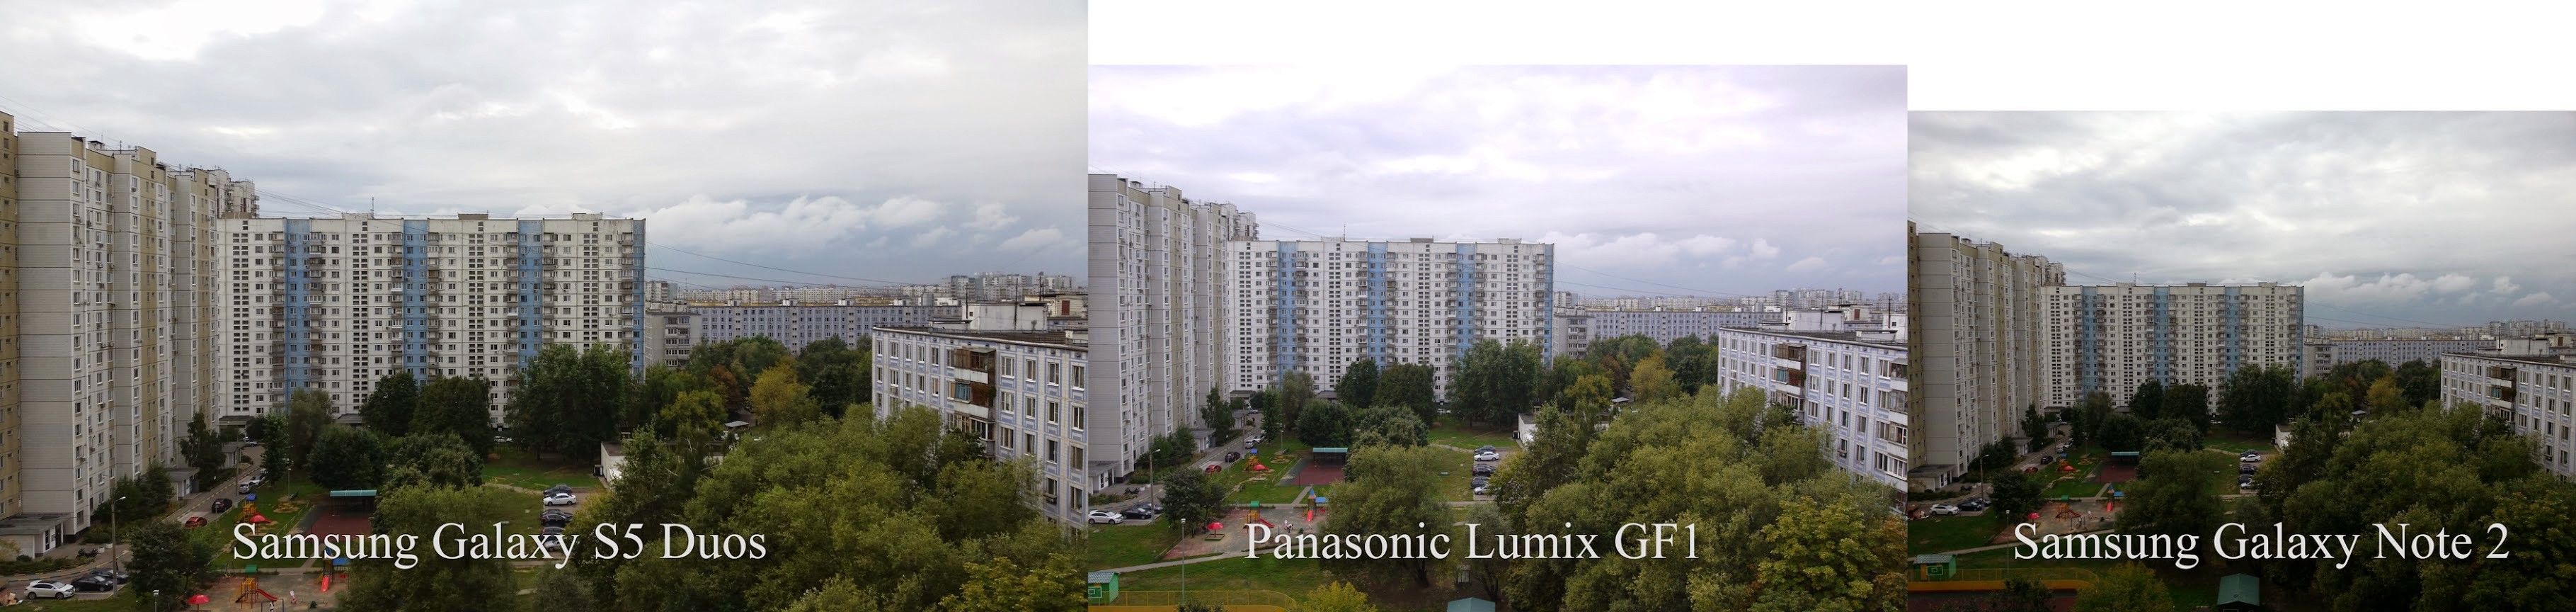 Сравнение фото из SG S5 Duos, Panasonic GF1 и SG Note 2. Скачайте полноразмерную фотографию отсюда.